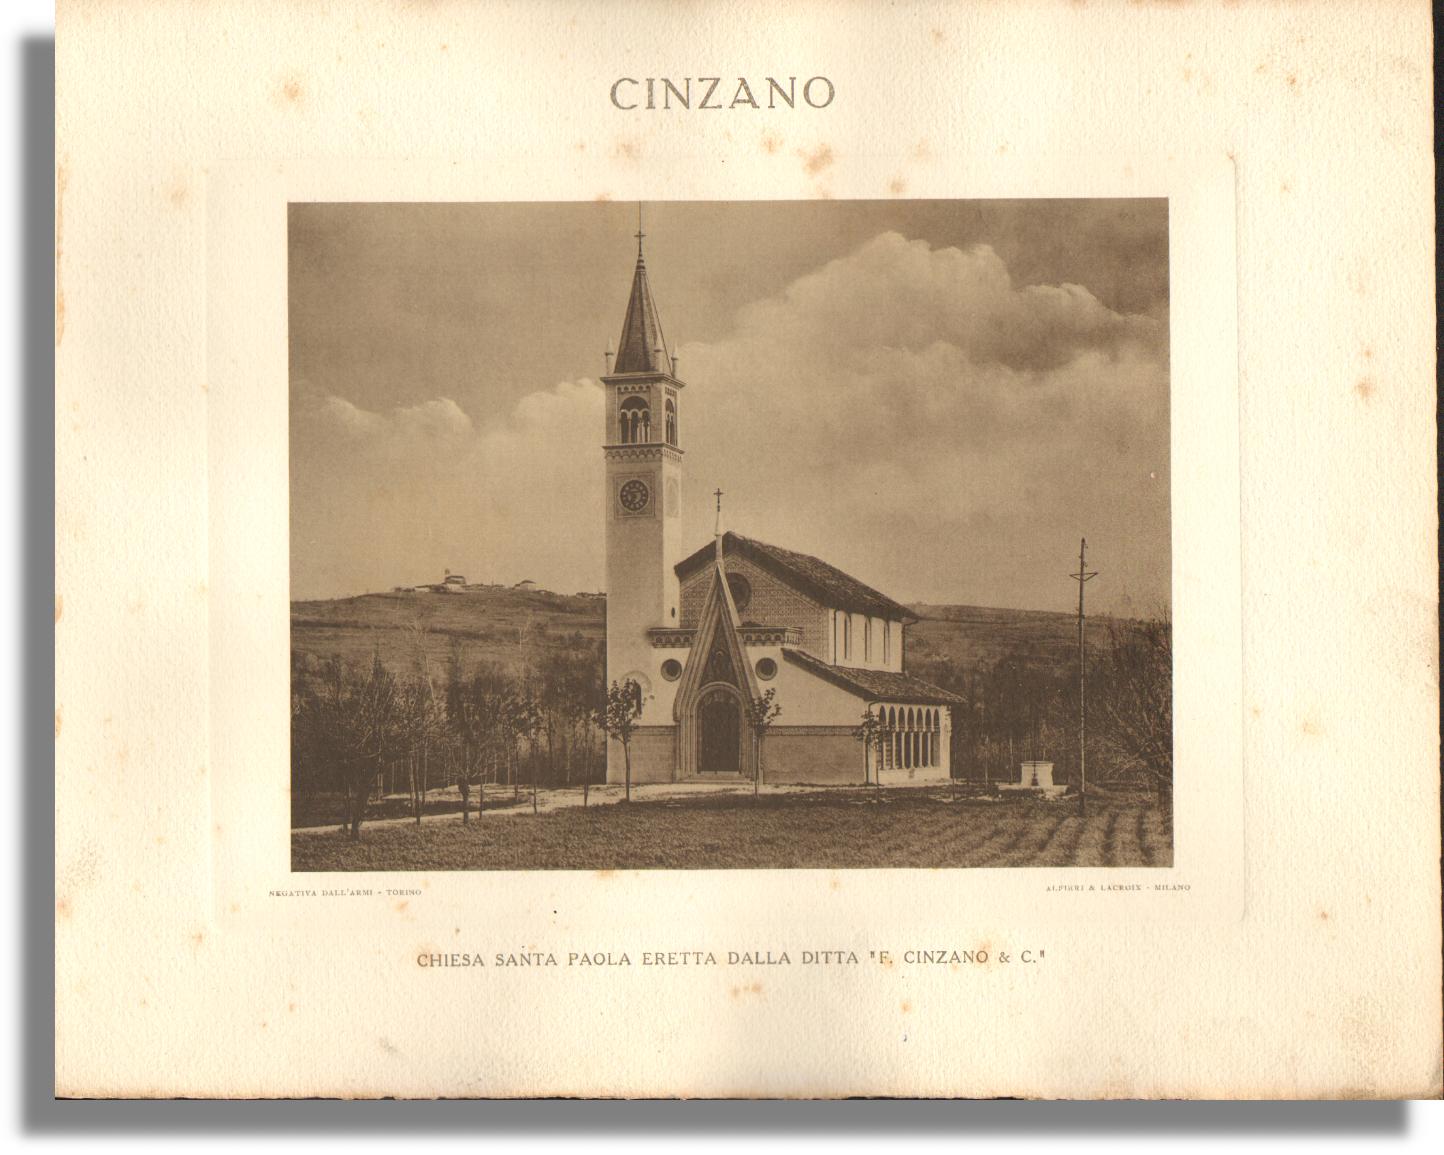 [CINZANO] Chiesa Santa Paola eretta dalla ditta "F.Cinzano & C." - Dall'Armi, Giancarlo